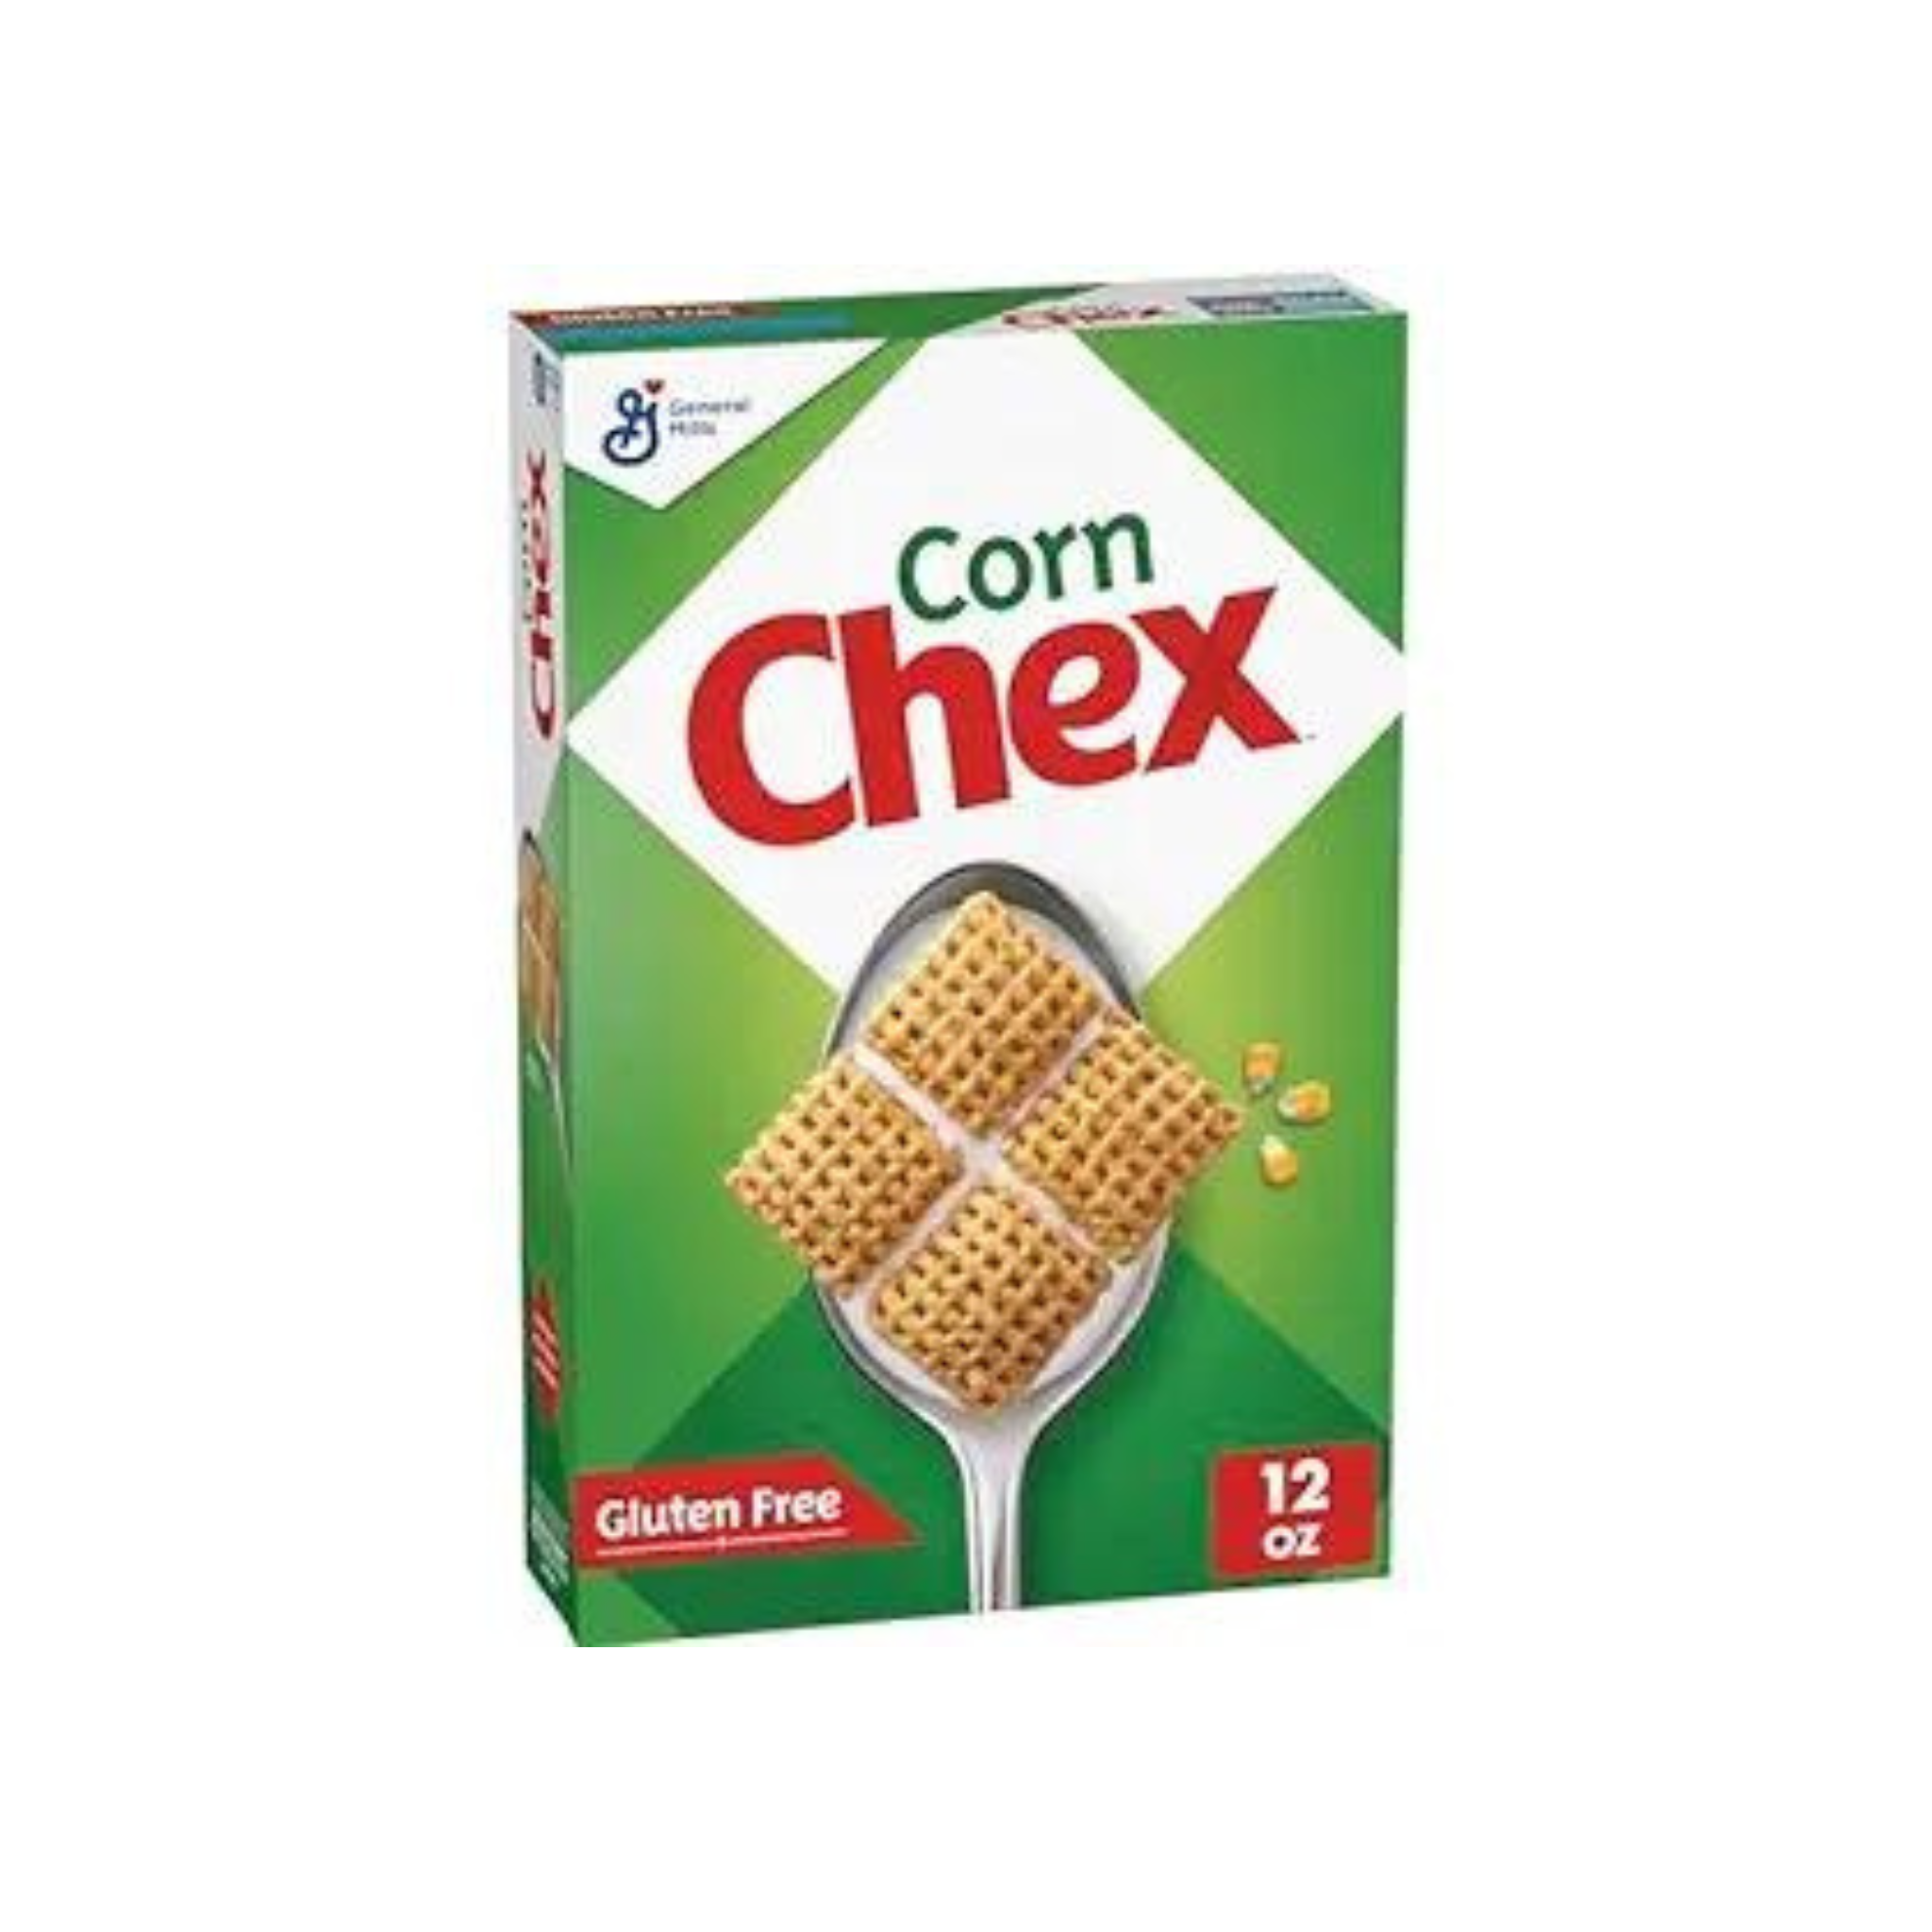 Corn Chex Gluten Free Breakfast Cereal, 12 oz